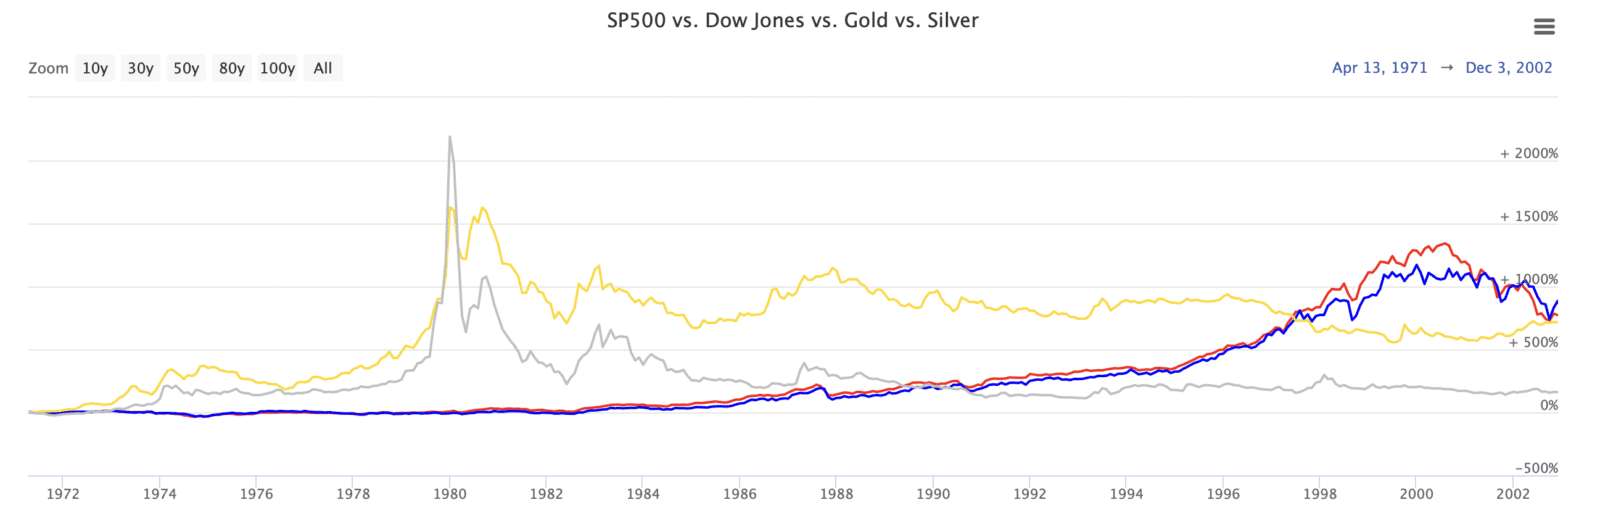 Besmettelijke ziekte composiet legaal Aandelen versus goud en zilver (sinds 1900) - Goudzaken